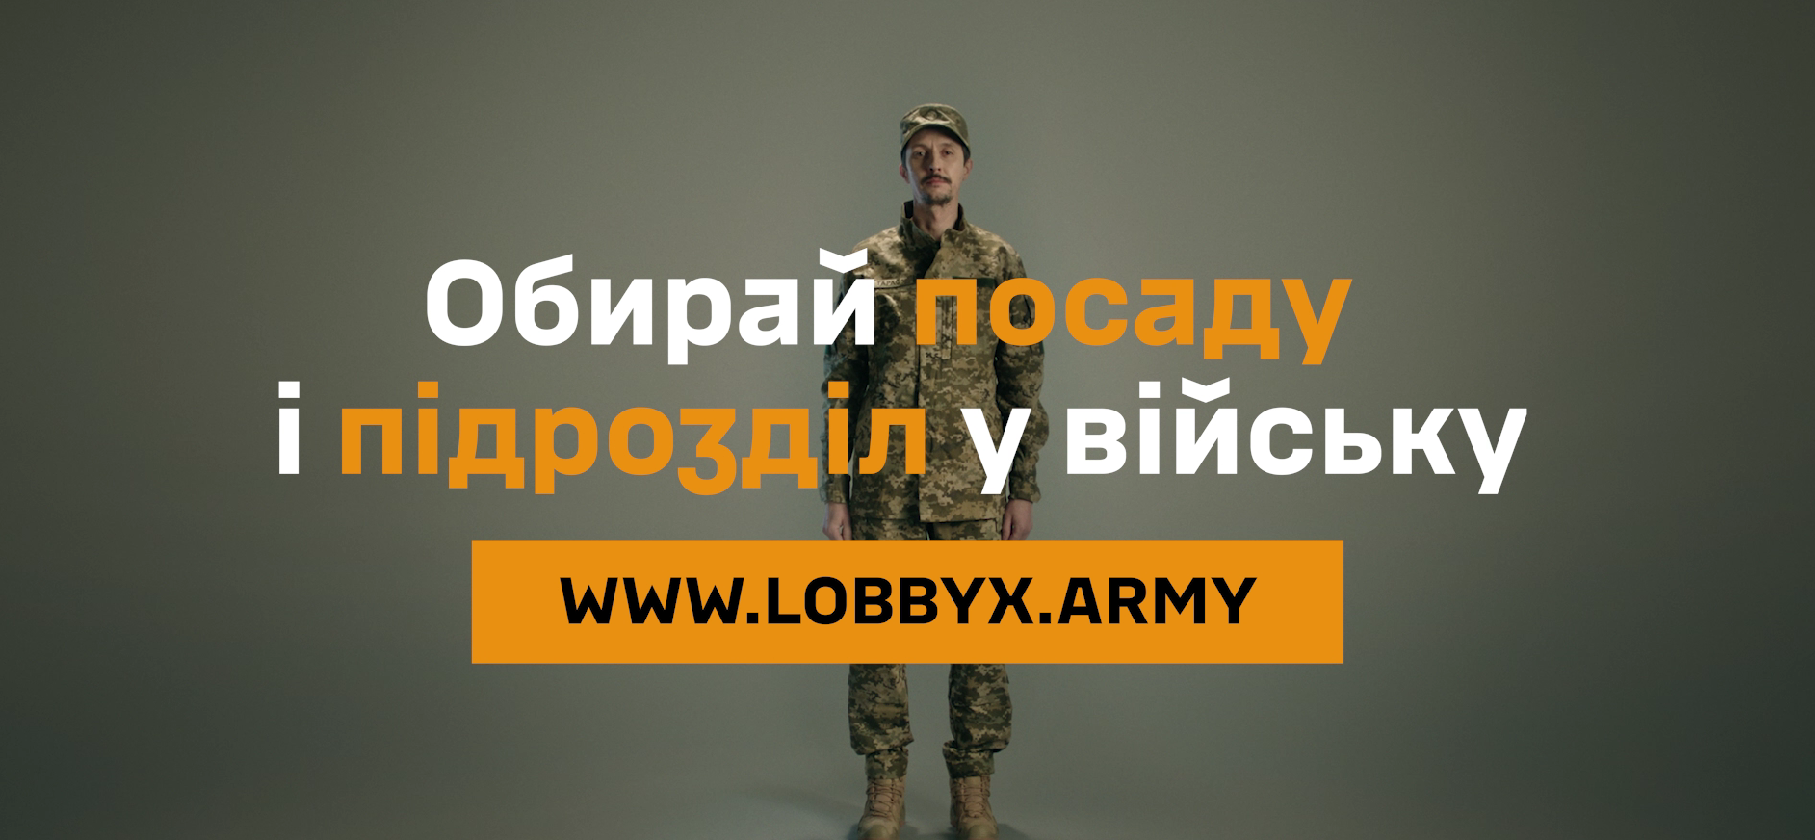 Військовий та надпис "Обирай посаду і підрозділ у війську"